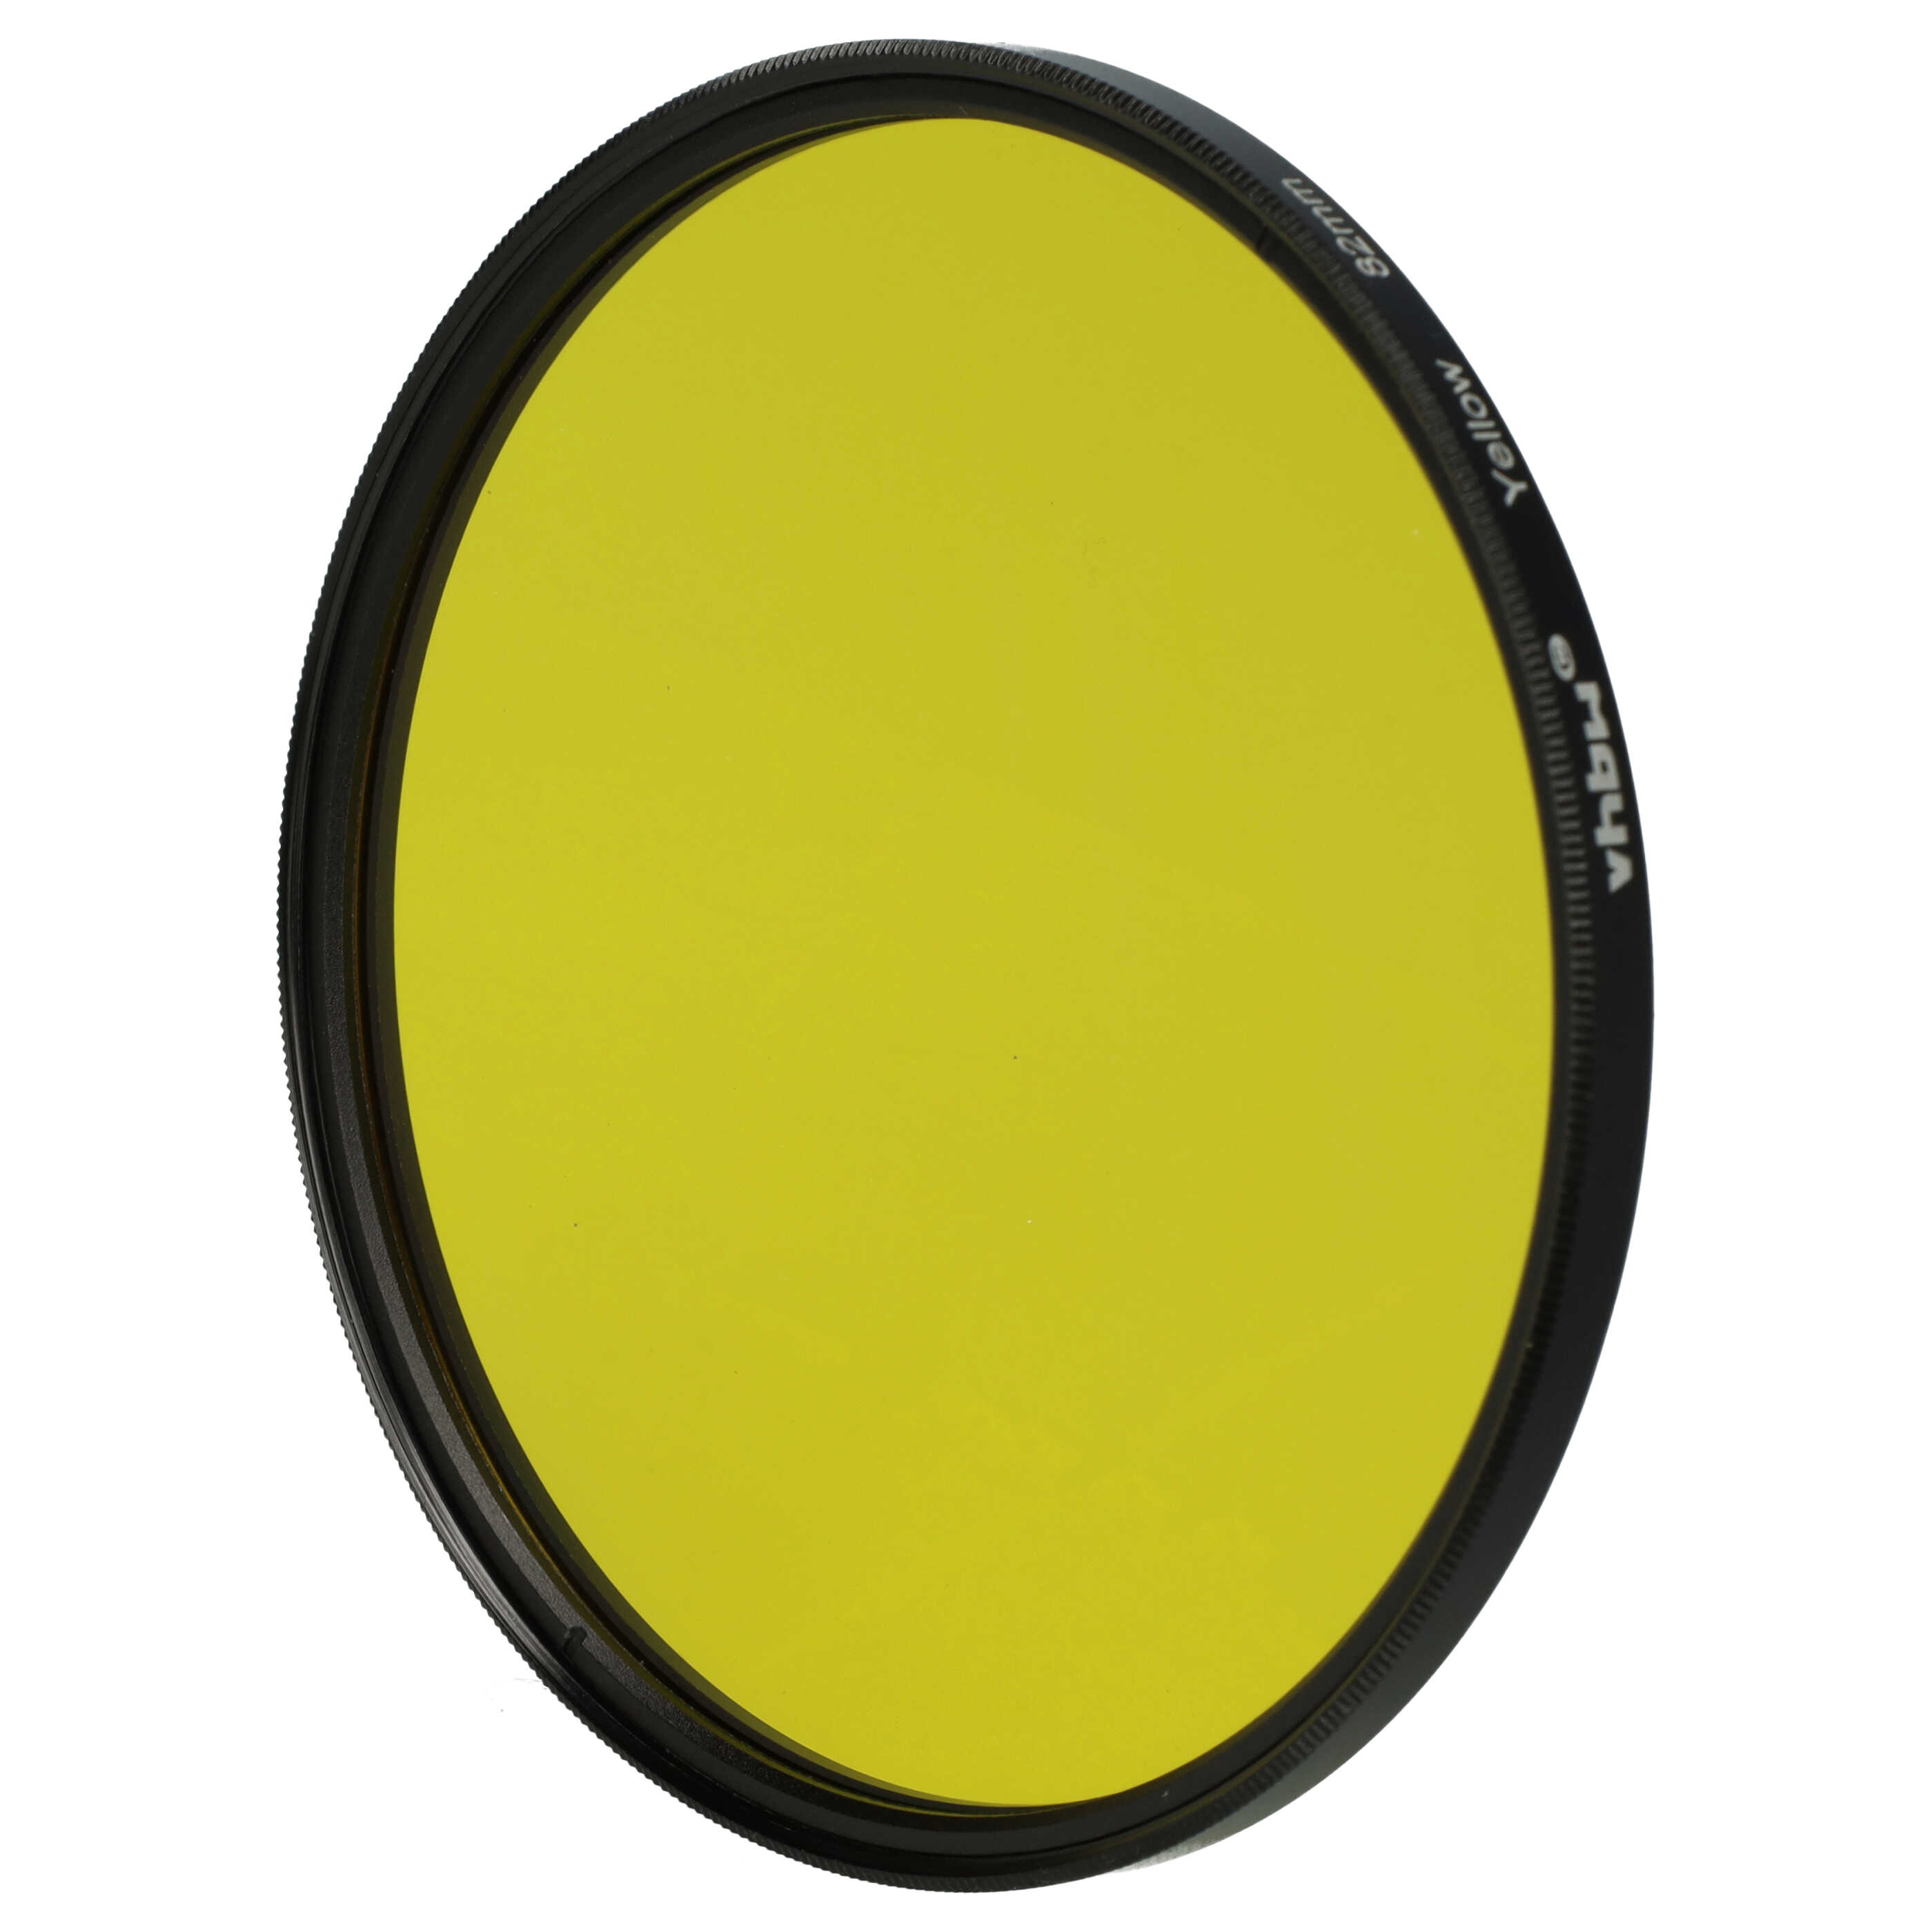 Filtro de color para objetivo de cámara con rosca de filtro de 82 mm - Filtro amarillo